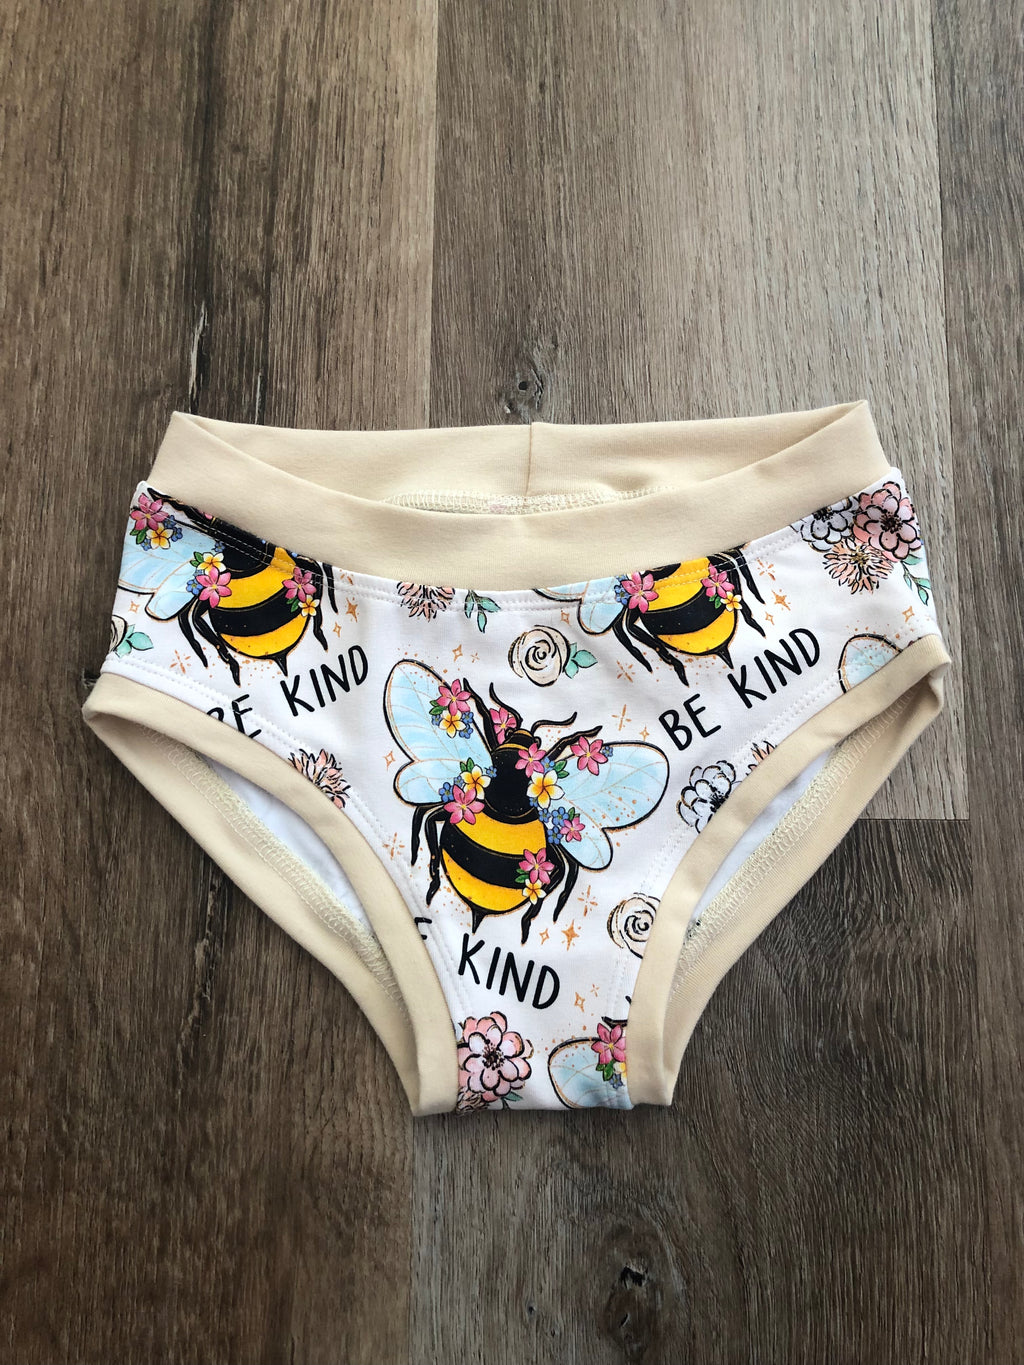 Bee Kind Kids Undies size 3-4, 5-6